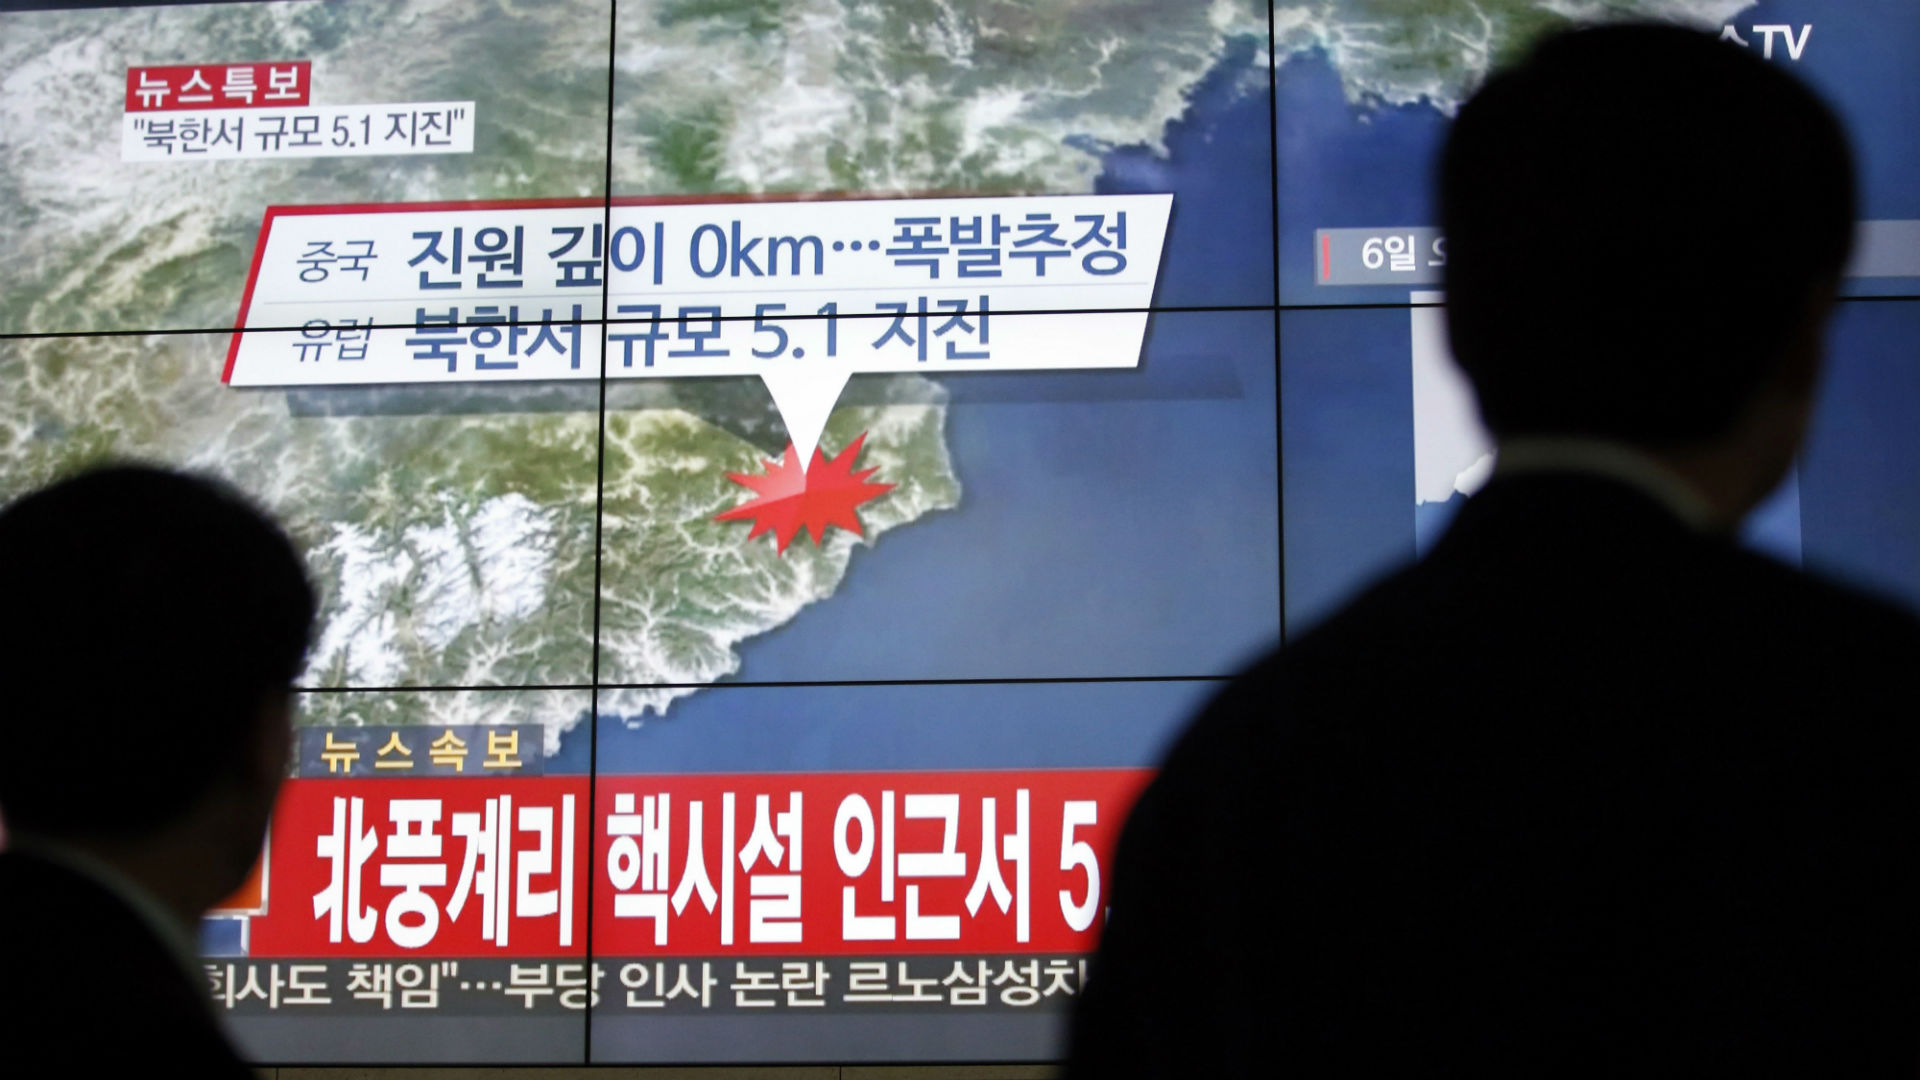 La ONU debe considerar que "Corea del Norte es una amenaza para el mundo", según Trump